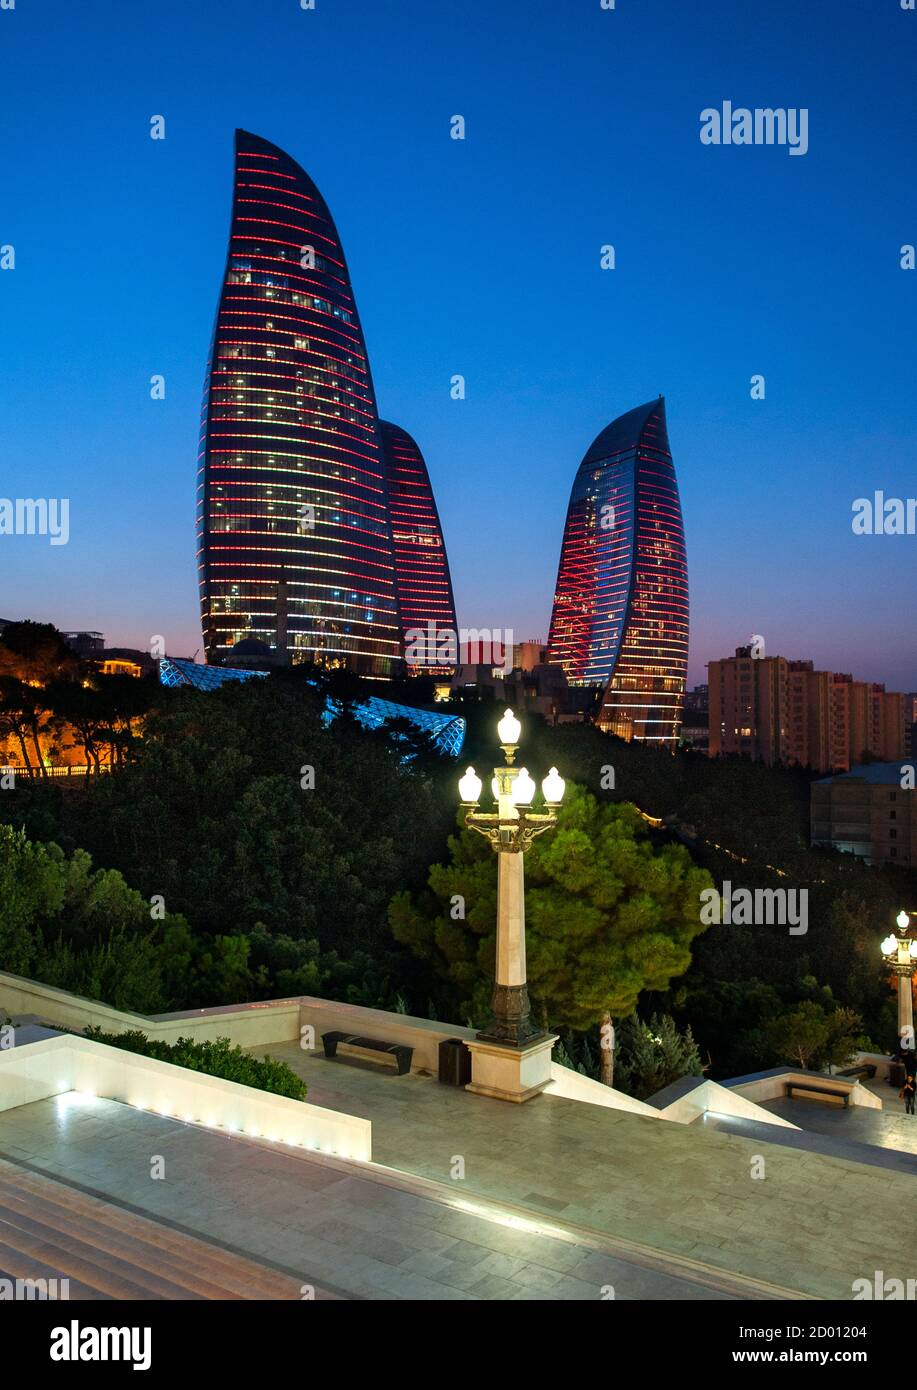 Baku's Flame Towers viewed from Dağüstü park at dusk. Stock Photo